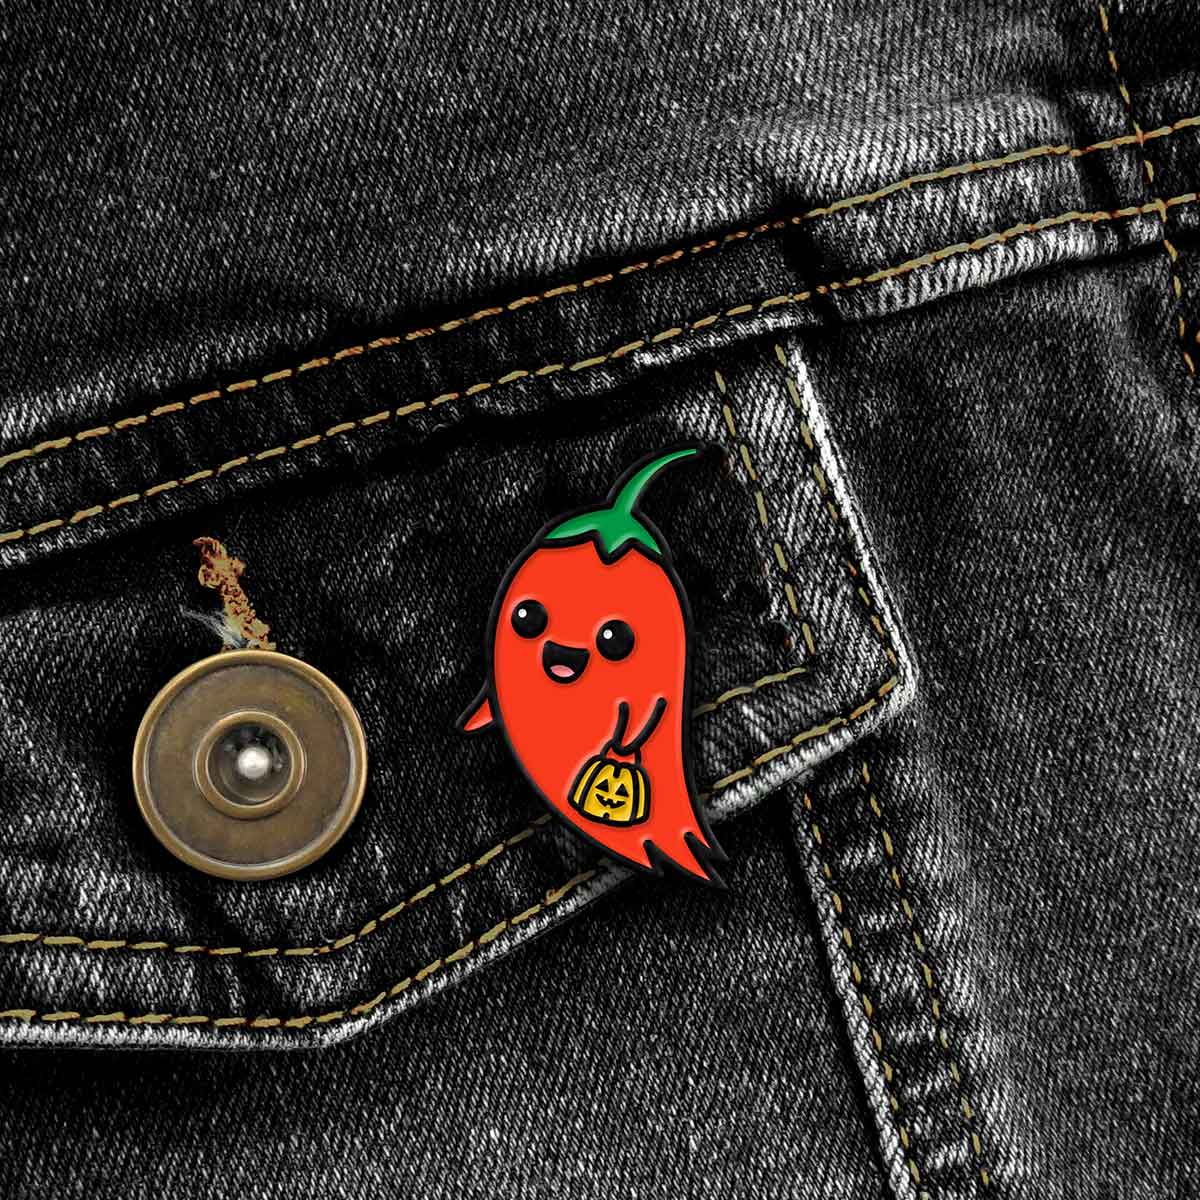 Ghost Pepper enamel pin on black jean jacket pocket